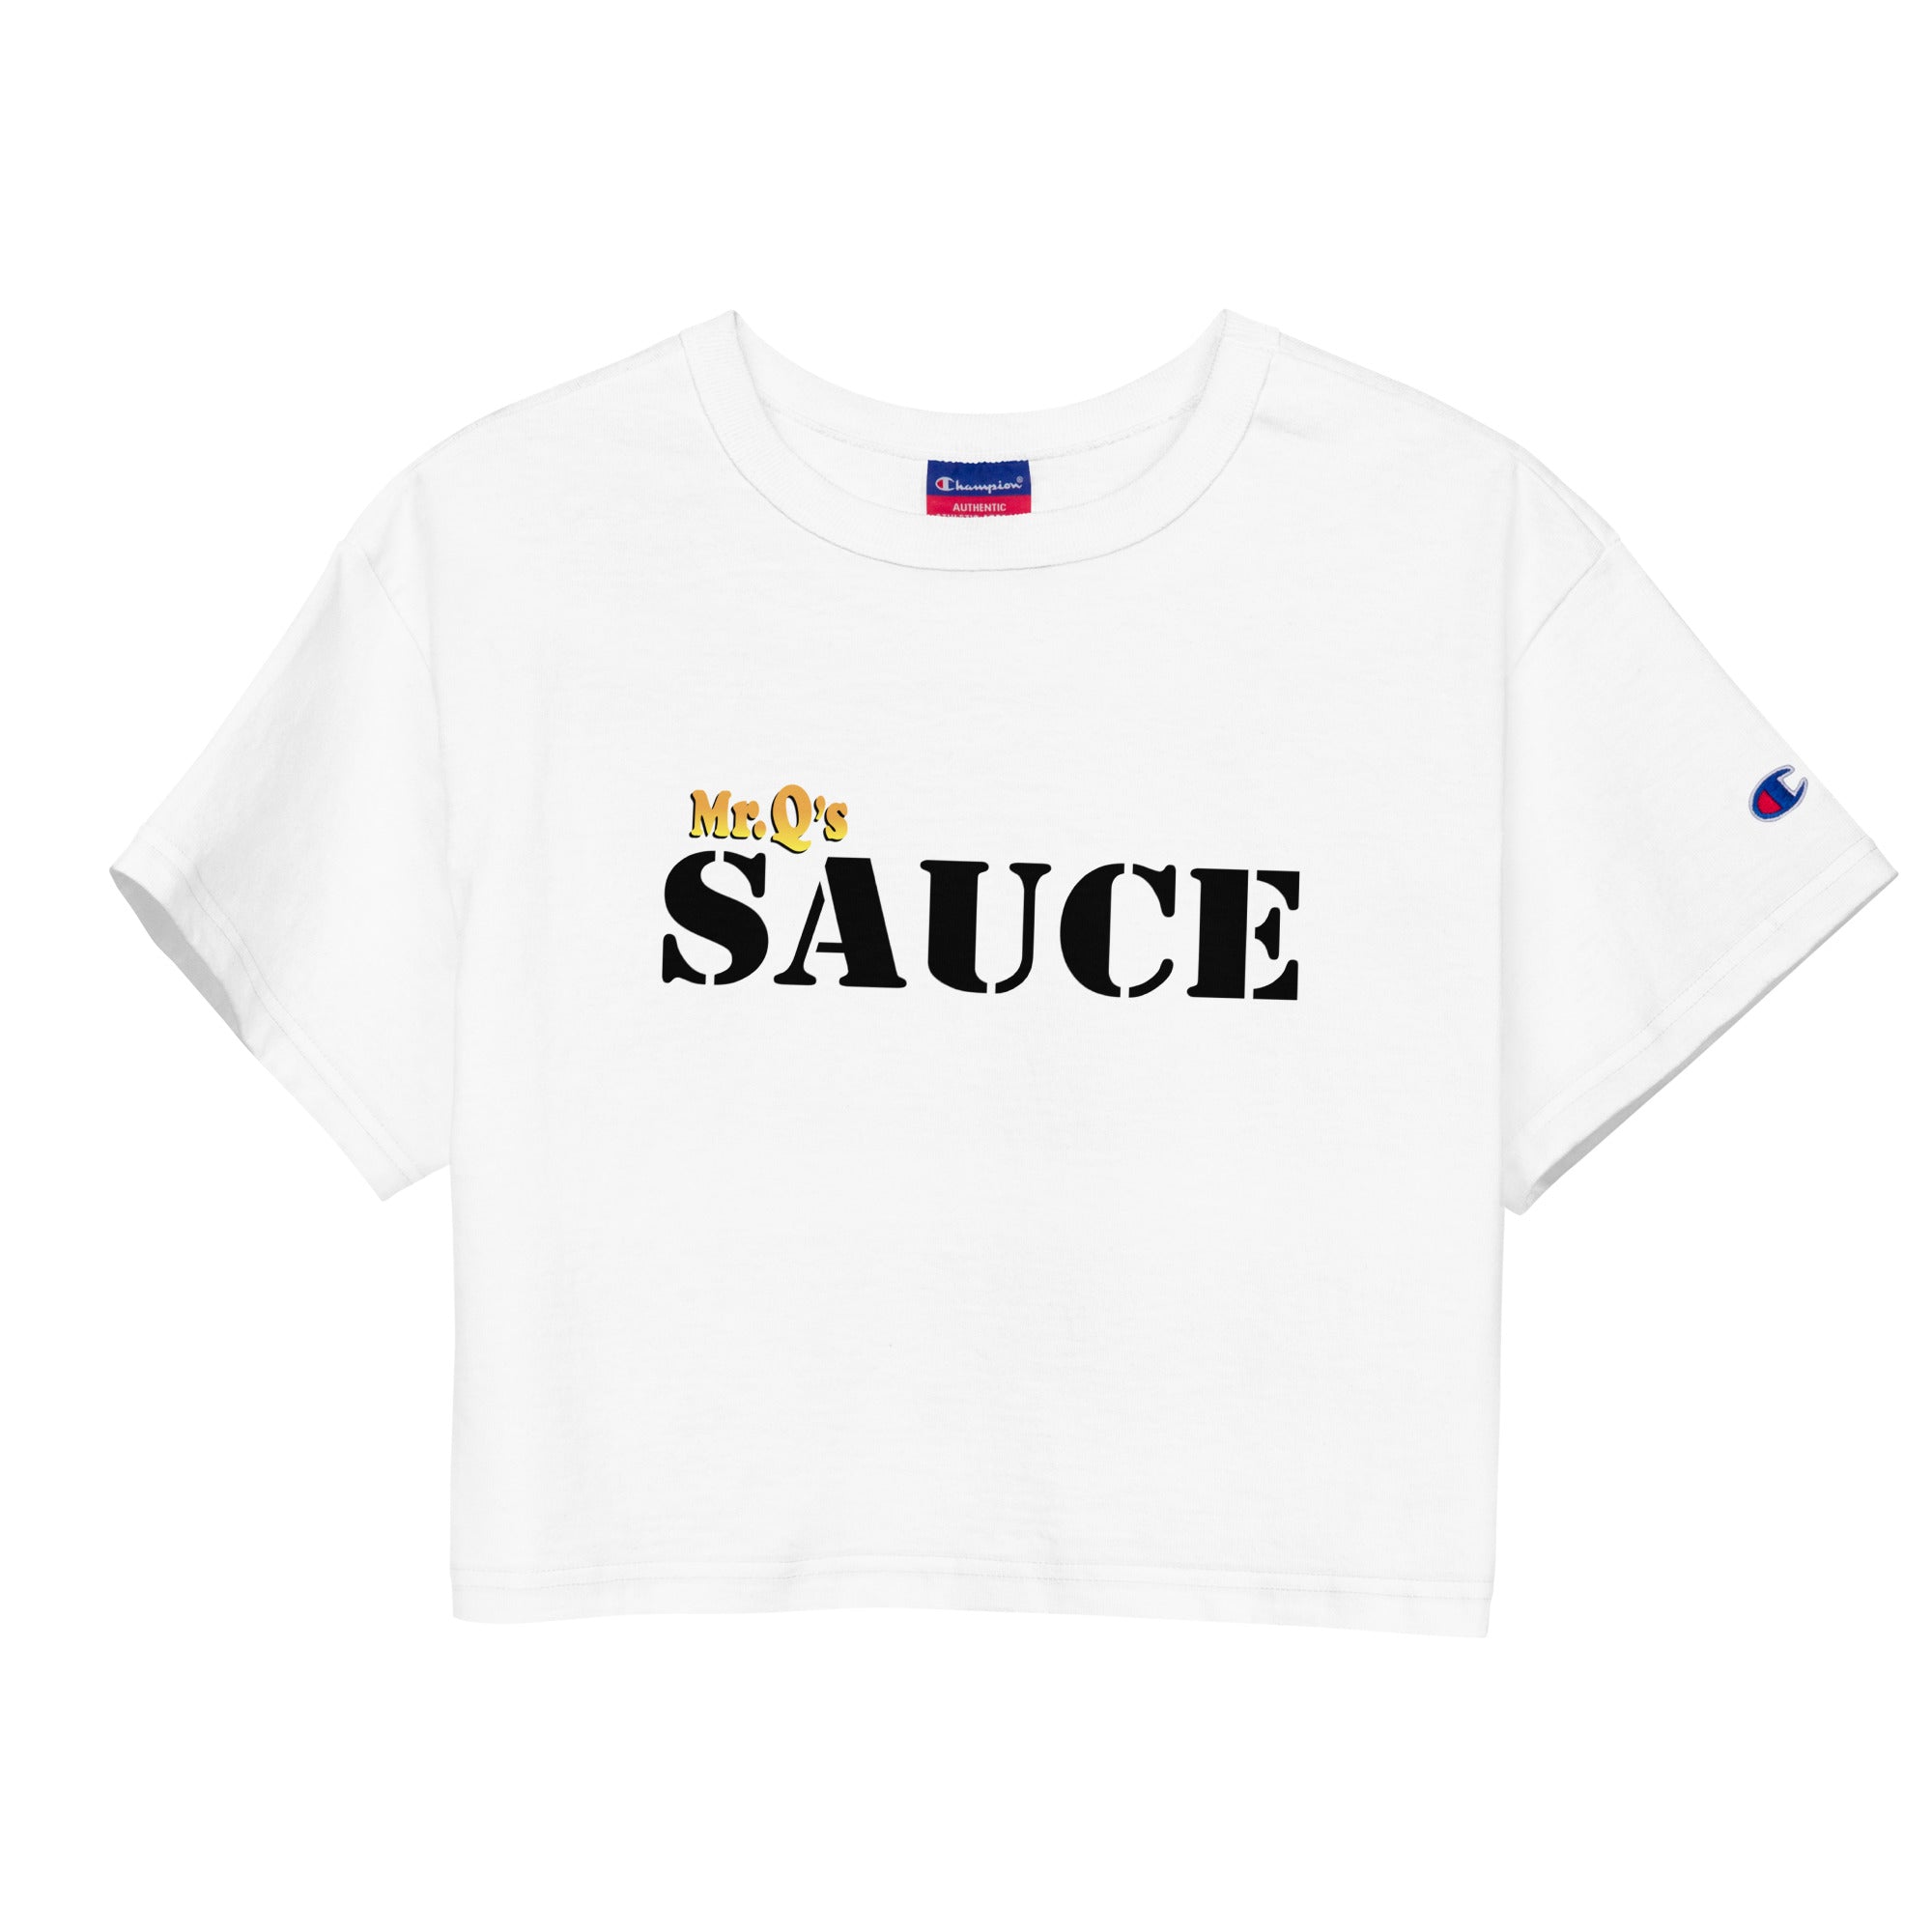 Mr. Q's Sauce Crop Top